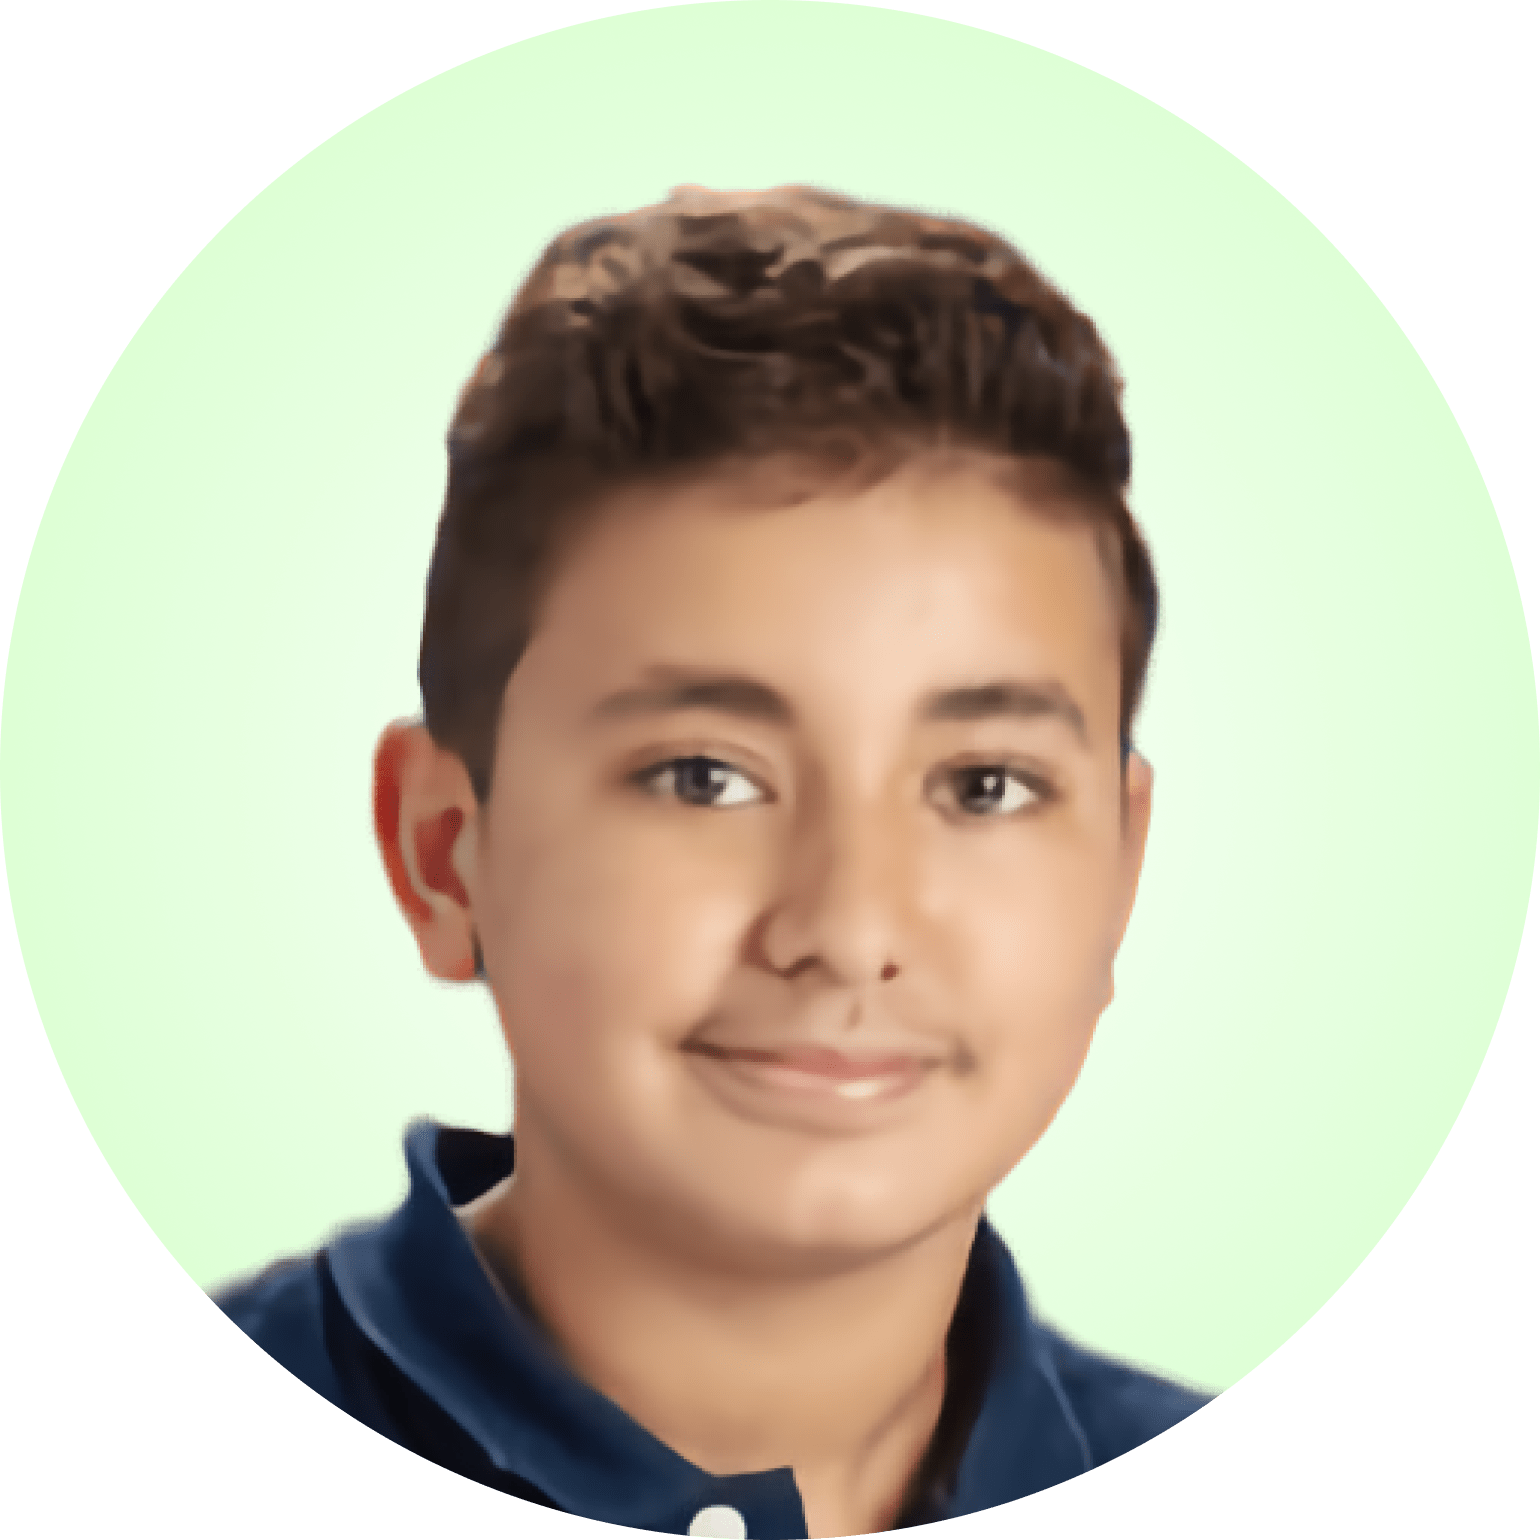 Boy - Age 13 - Adam Fahmi - 2